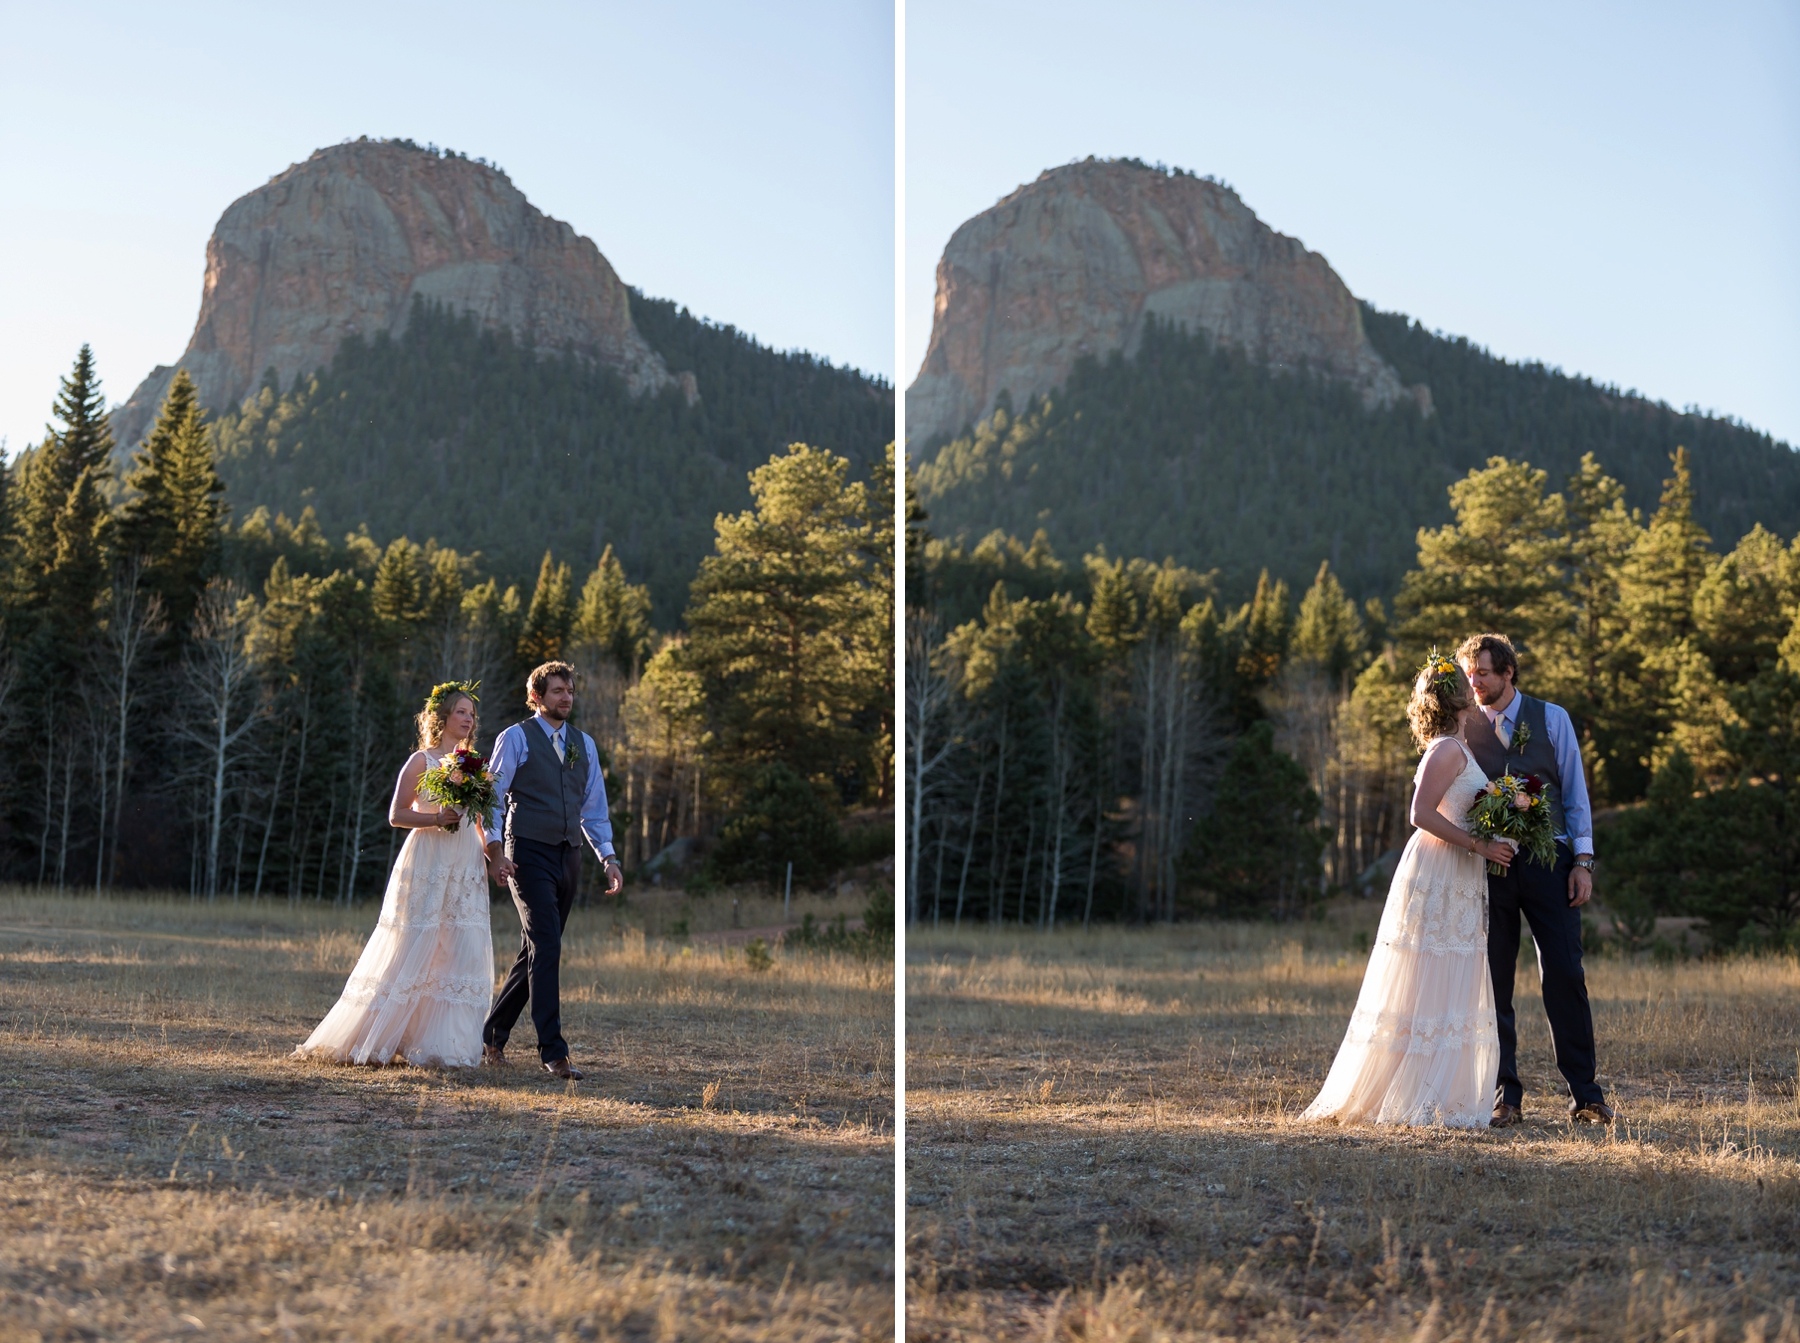 Pine Colorado wedding